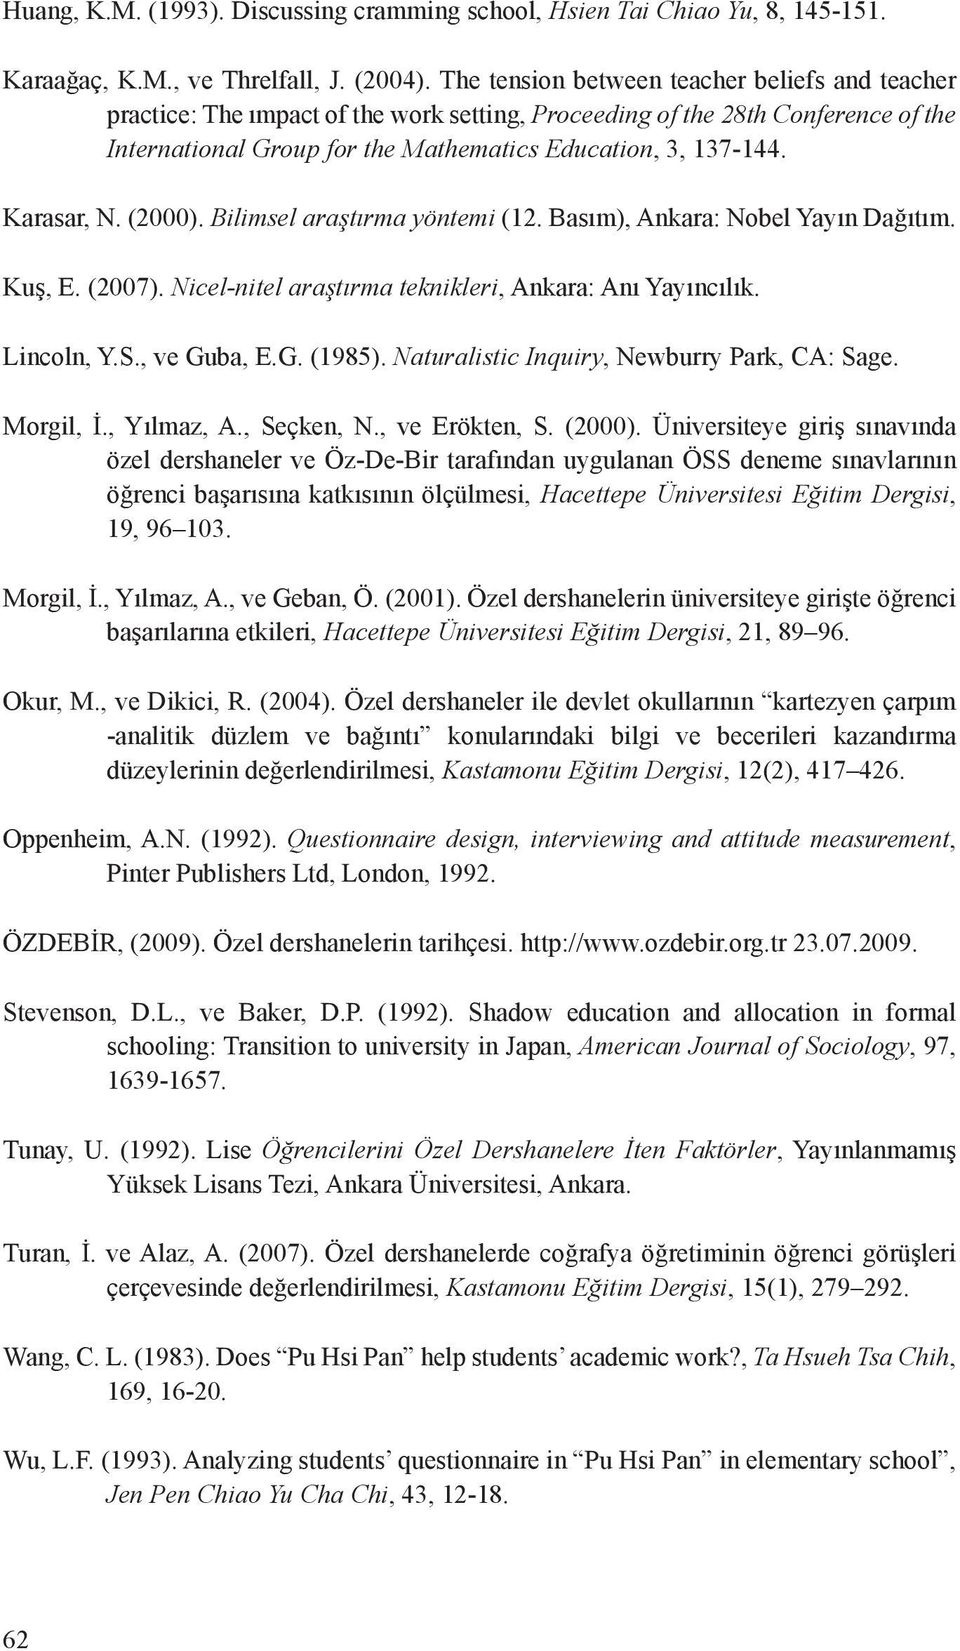 Karasar, N. (2000). Bilimsel araştırma yöntemi (12. Basım), Ankara: Nobel Yayın Dağıtım. Kuş, E. (2007). Nicel-nitel araştırma teknikleri, Ankara: Anı Yayıncılık. Lincoln, Y.S., ve Guba, E.G. (1985).